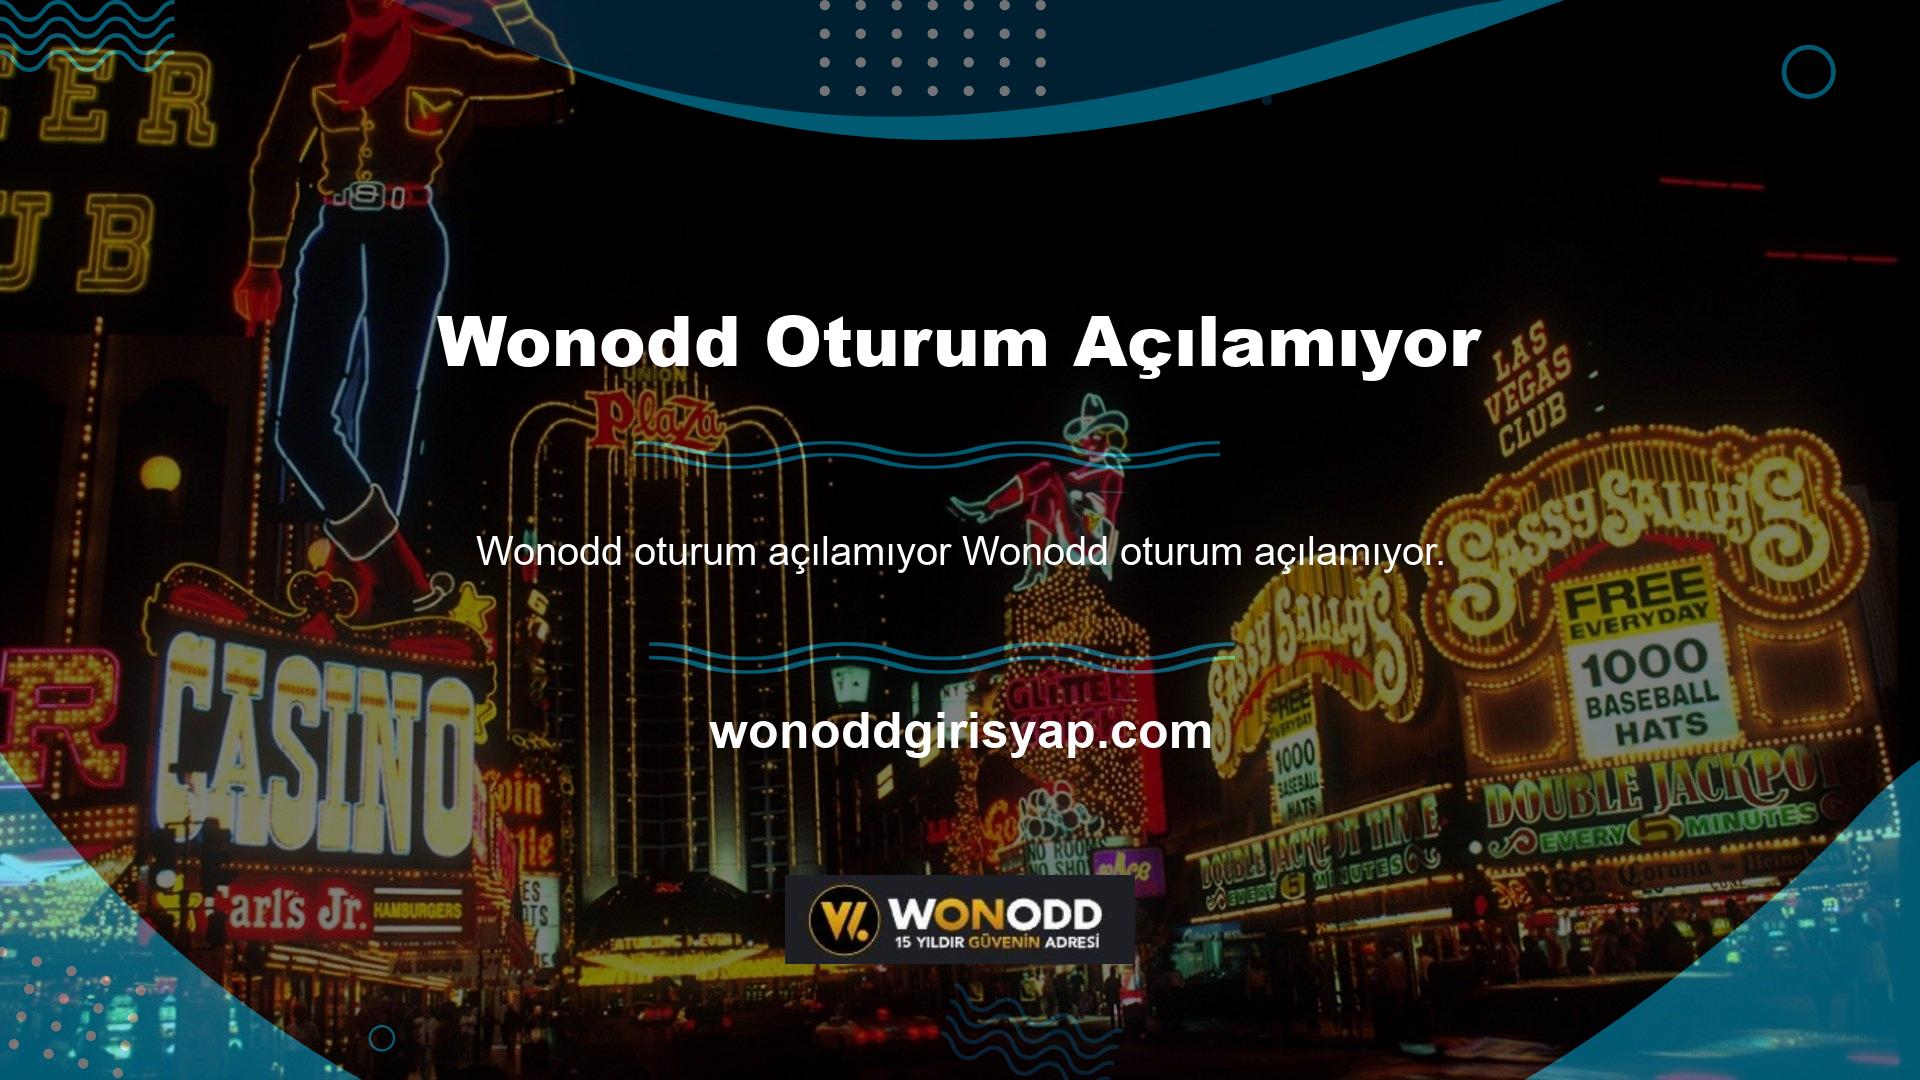 Wonodd, bahis, canlı casino, 3D slotlar, bingo ve poker oyunlarını içeren çekici ve basit bir arayüze sahip bir bahis platformudur